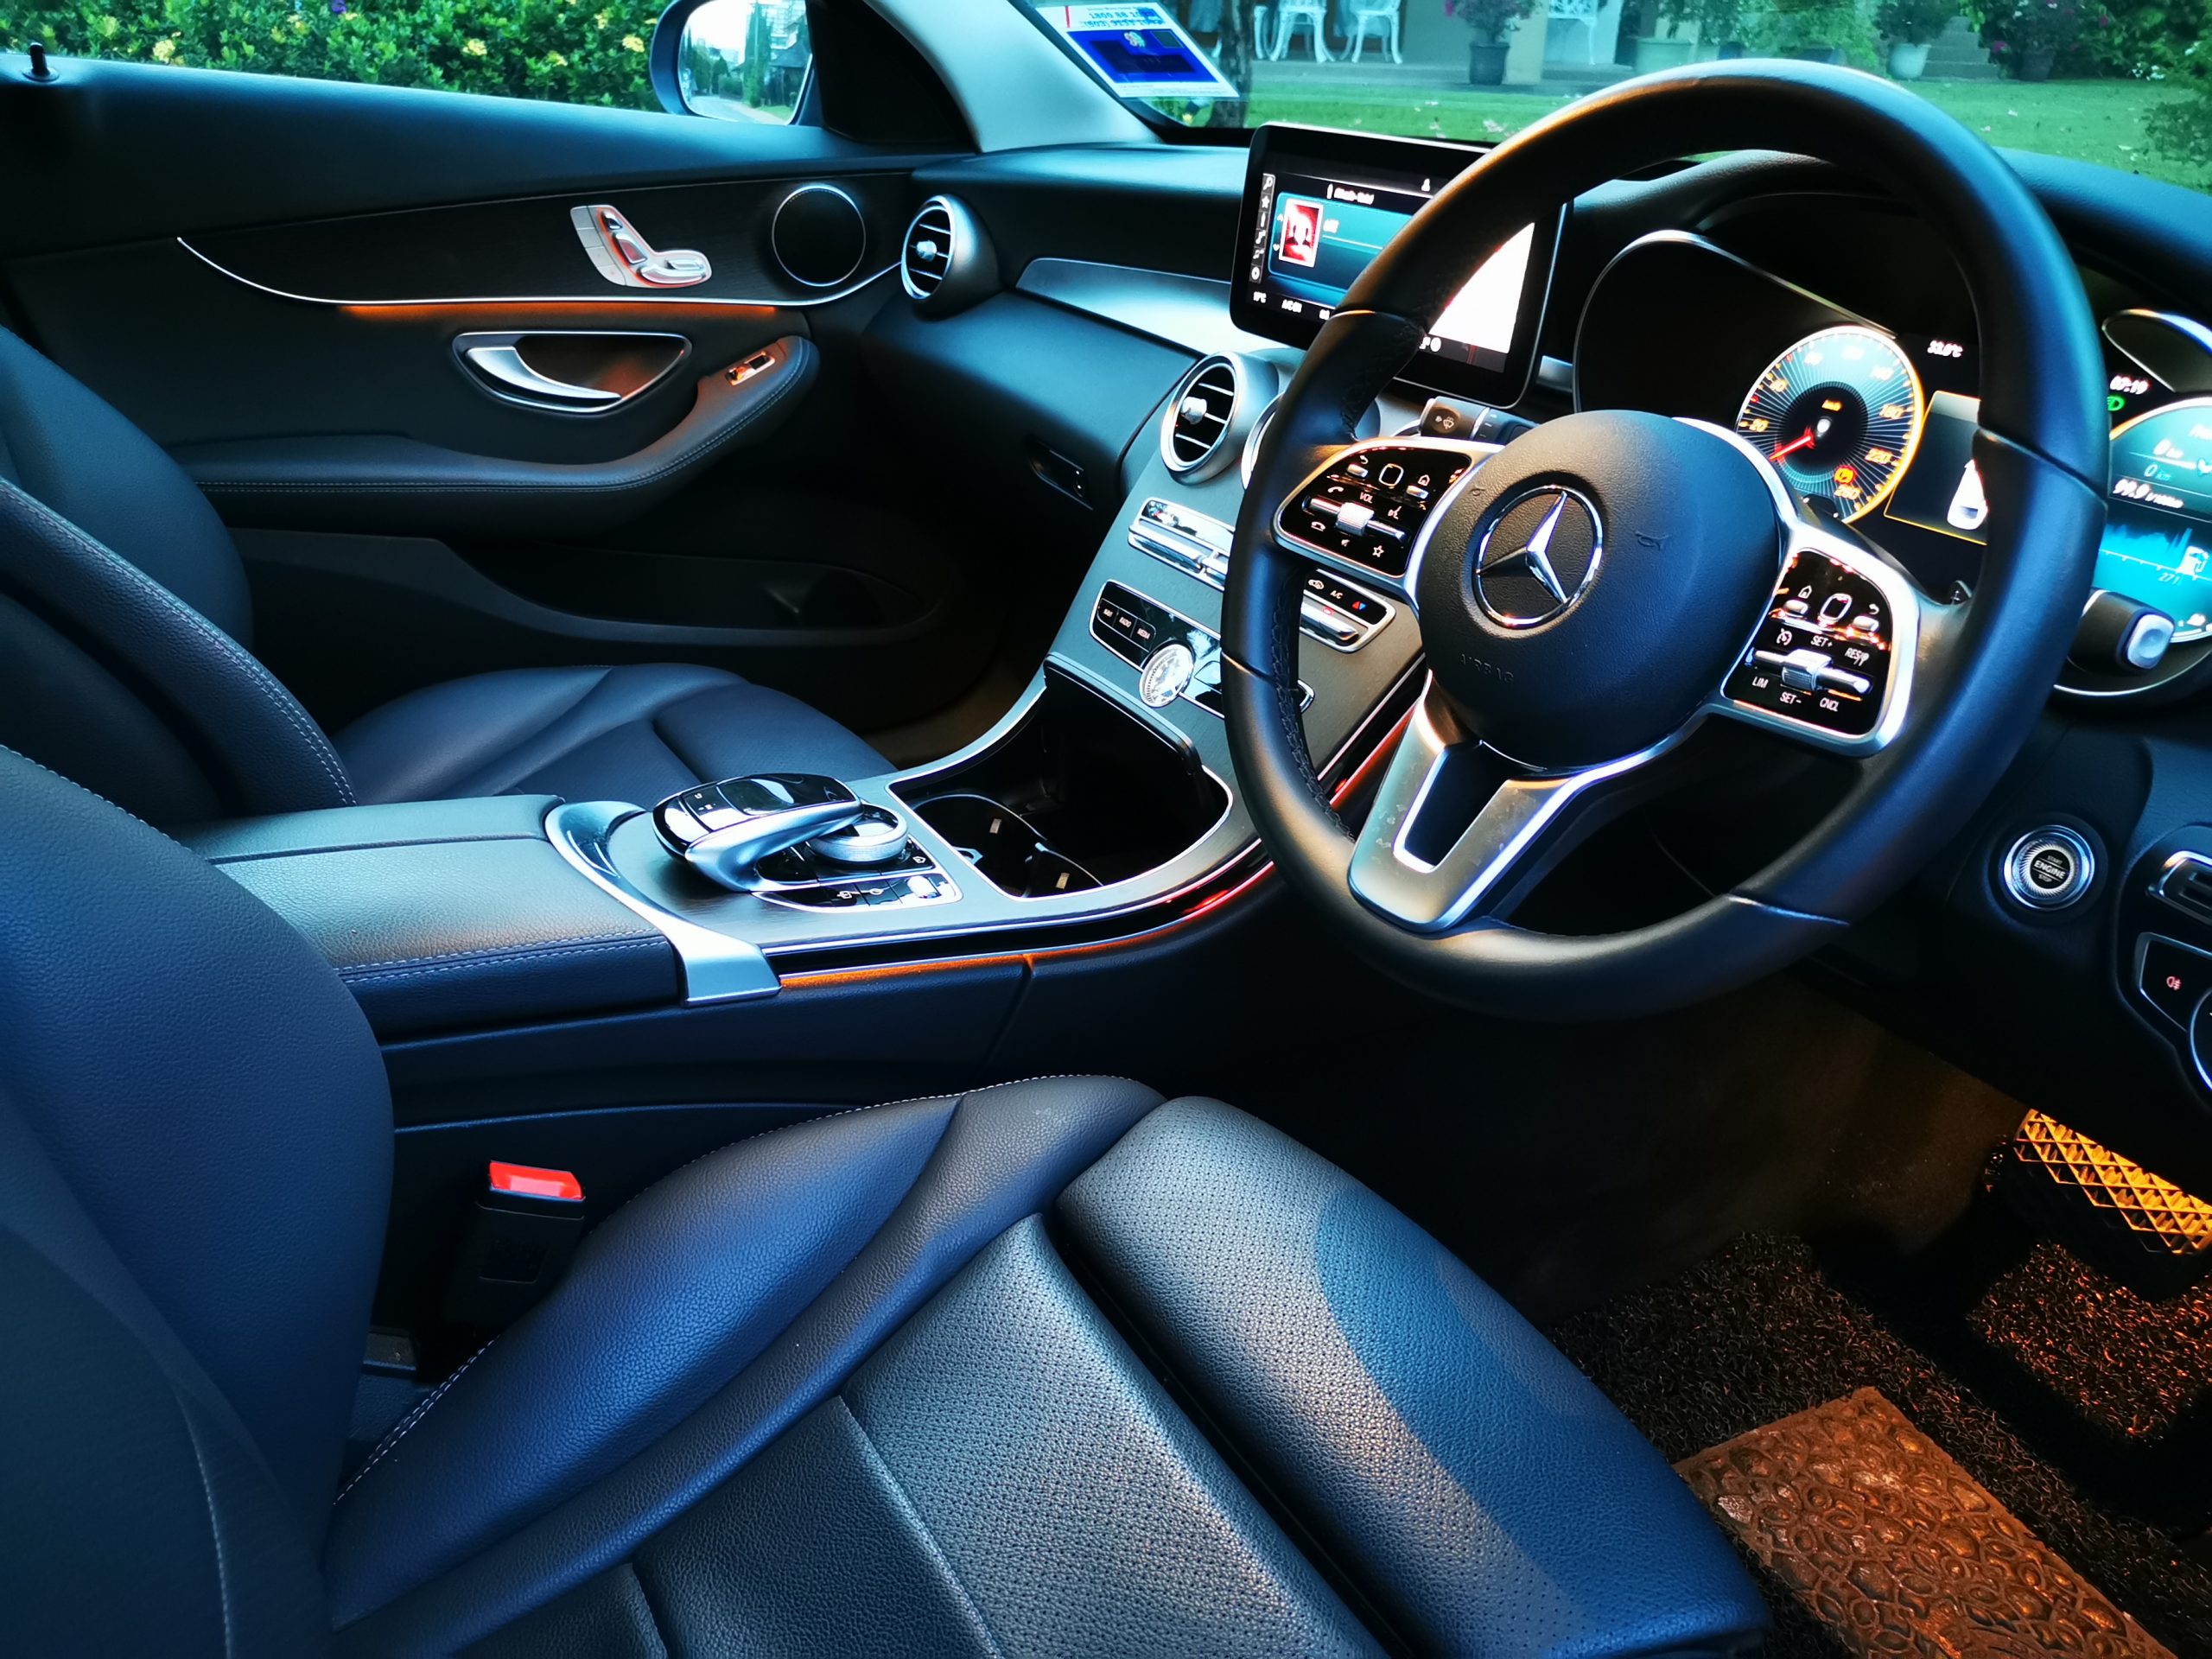 Mercedes C200 interior dashboard